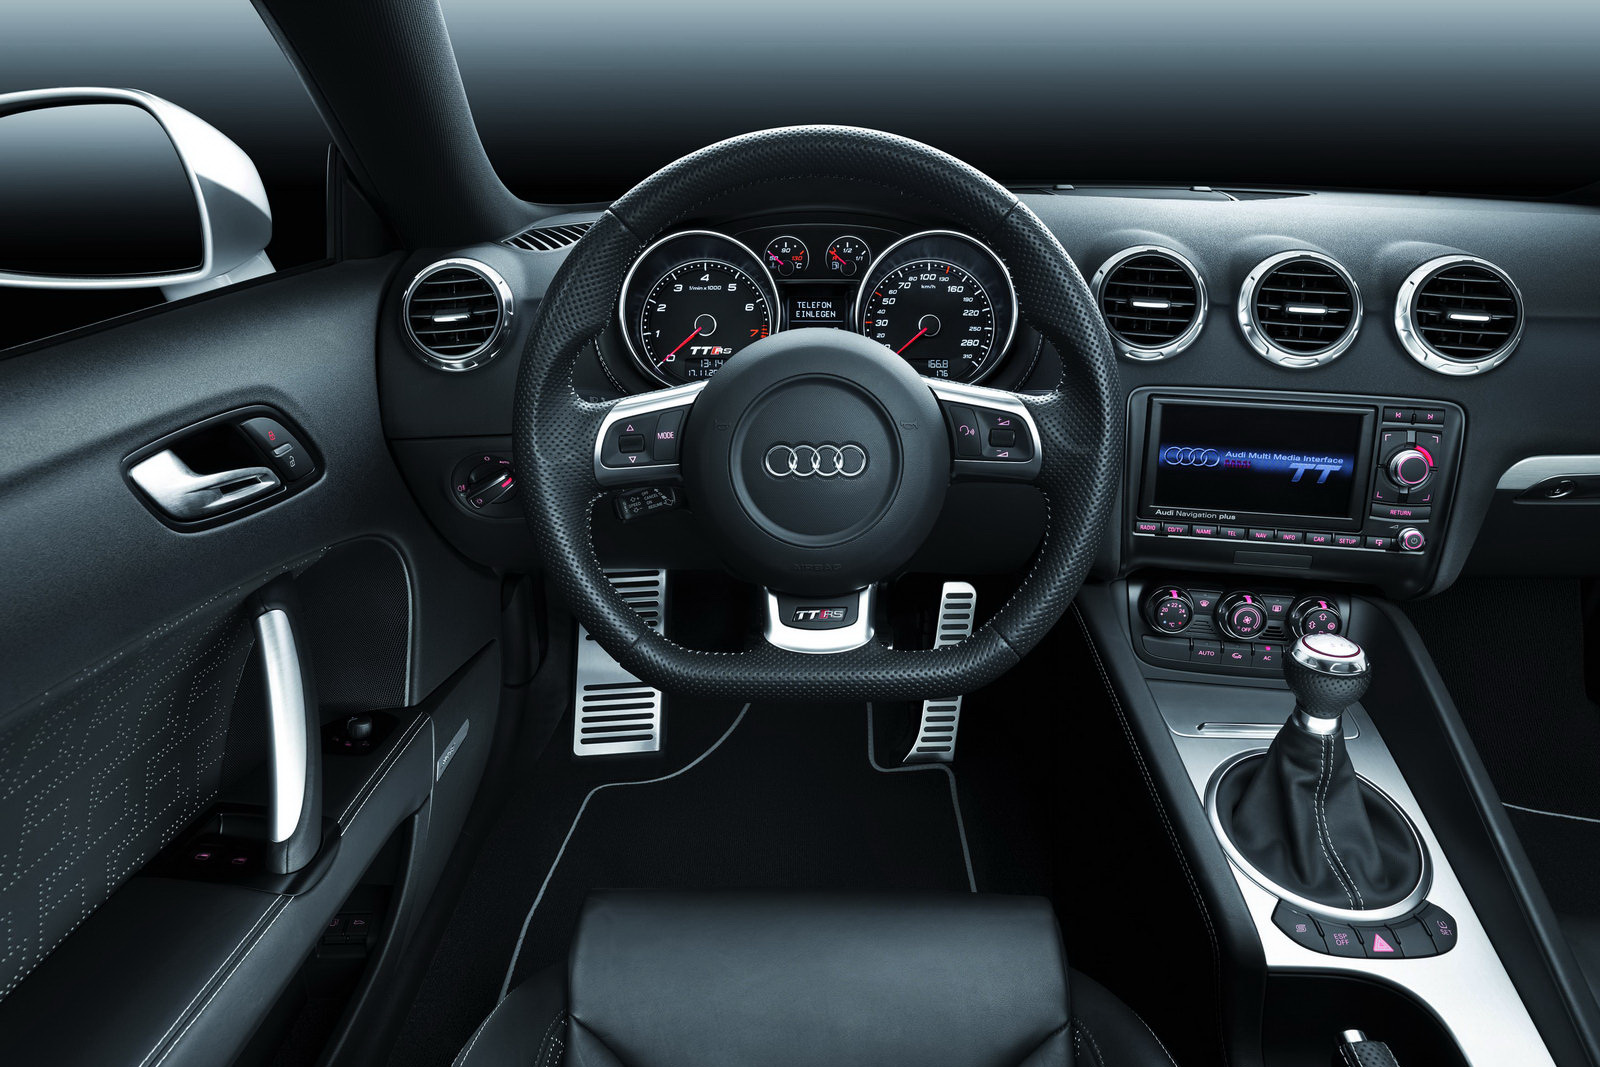 http://1.bp.blogspot.com/-AbucFC4WMOU/T-DCbceNIfI/AAAAAAAAAFU/O4rMyr3HK0c/s1600/2012+Audi+TT+RS+Interior+Dashboard+View.jpg